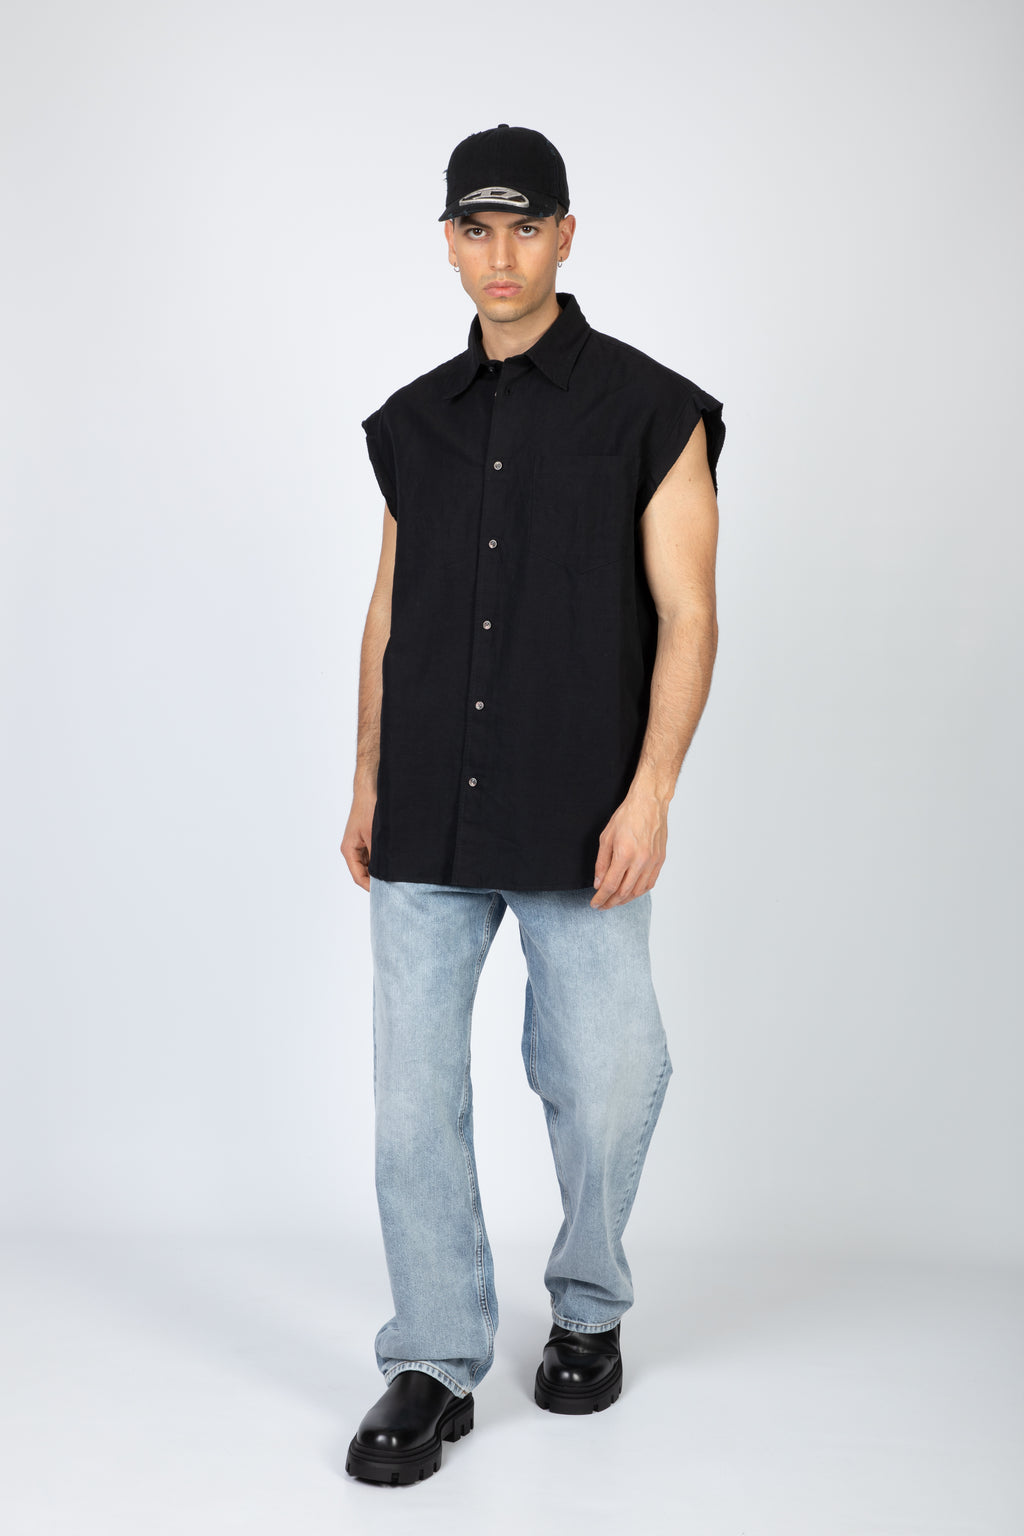 alt-image__Black-linen-blend-sleeveless-shirt---S-Simens